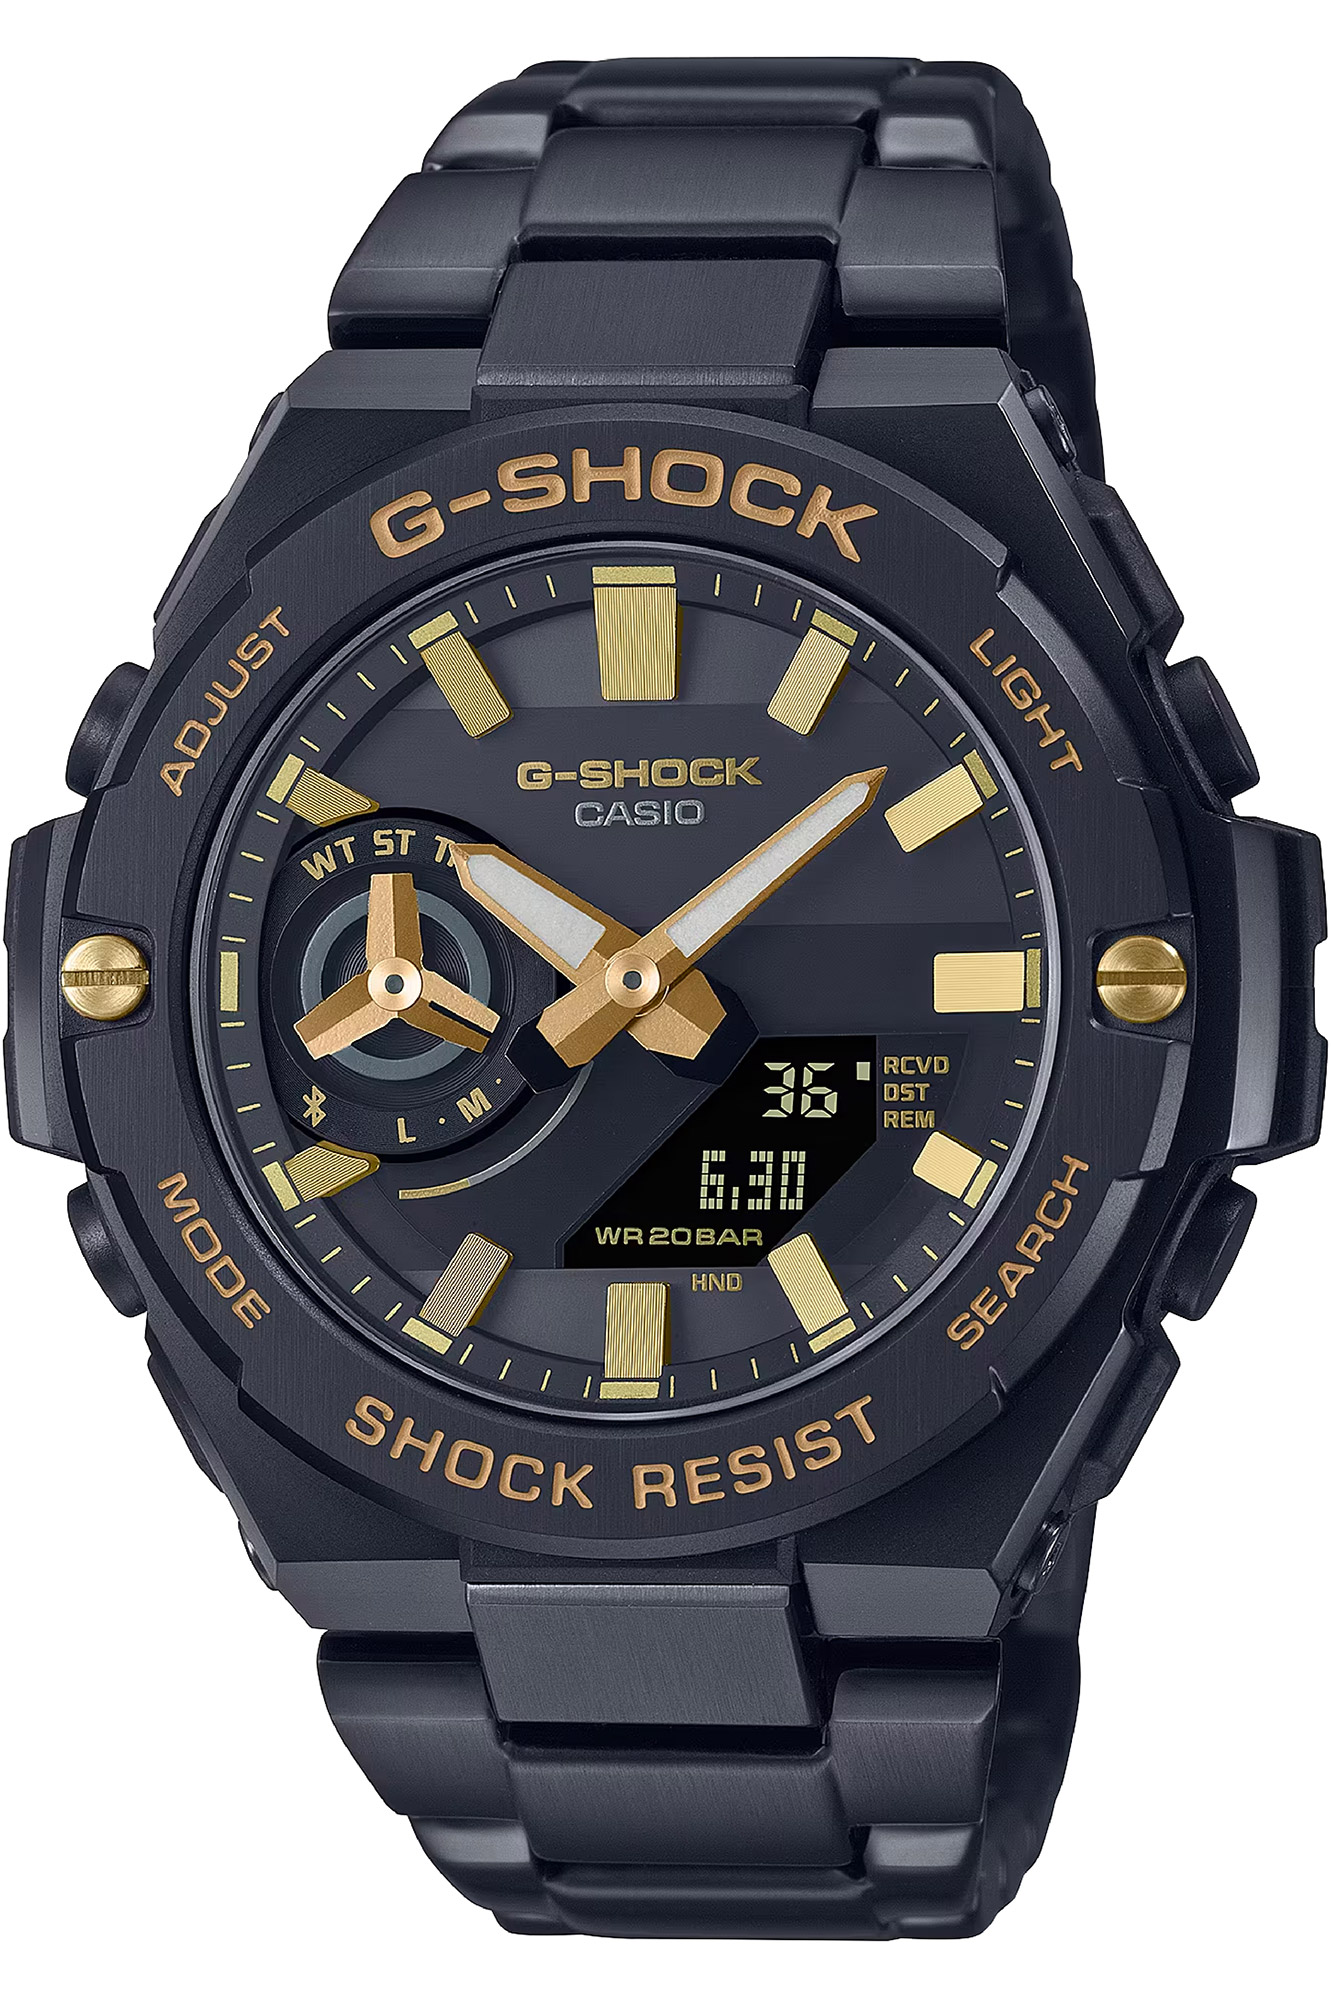 Watch CASIO G-Shock gst-b500bd-1a9er